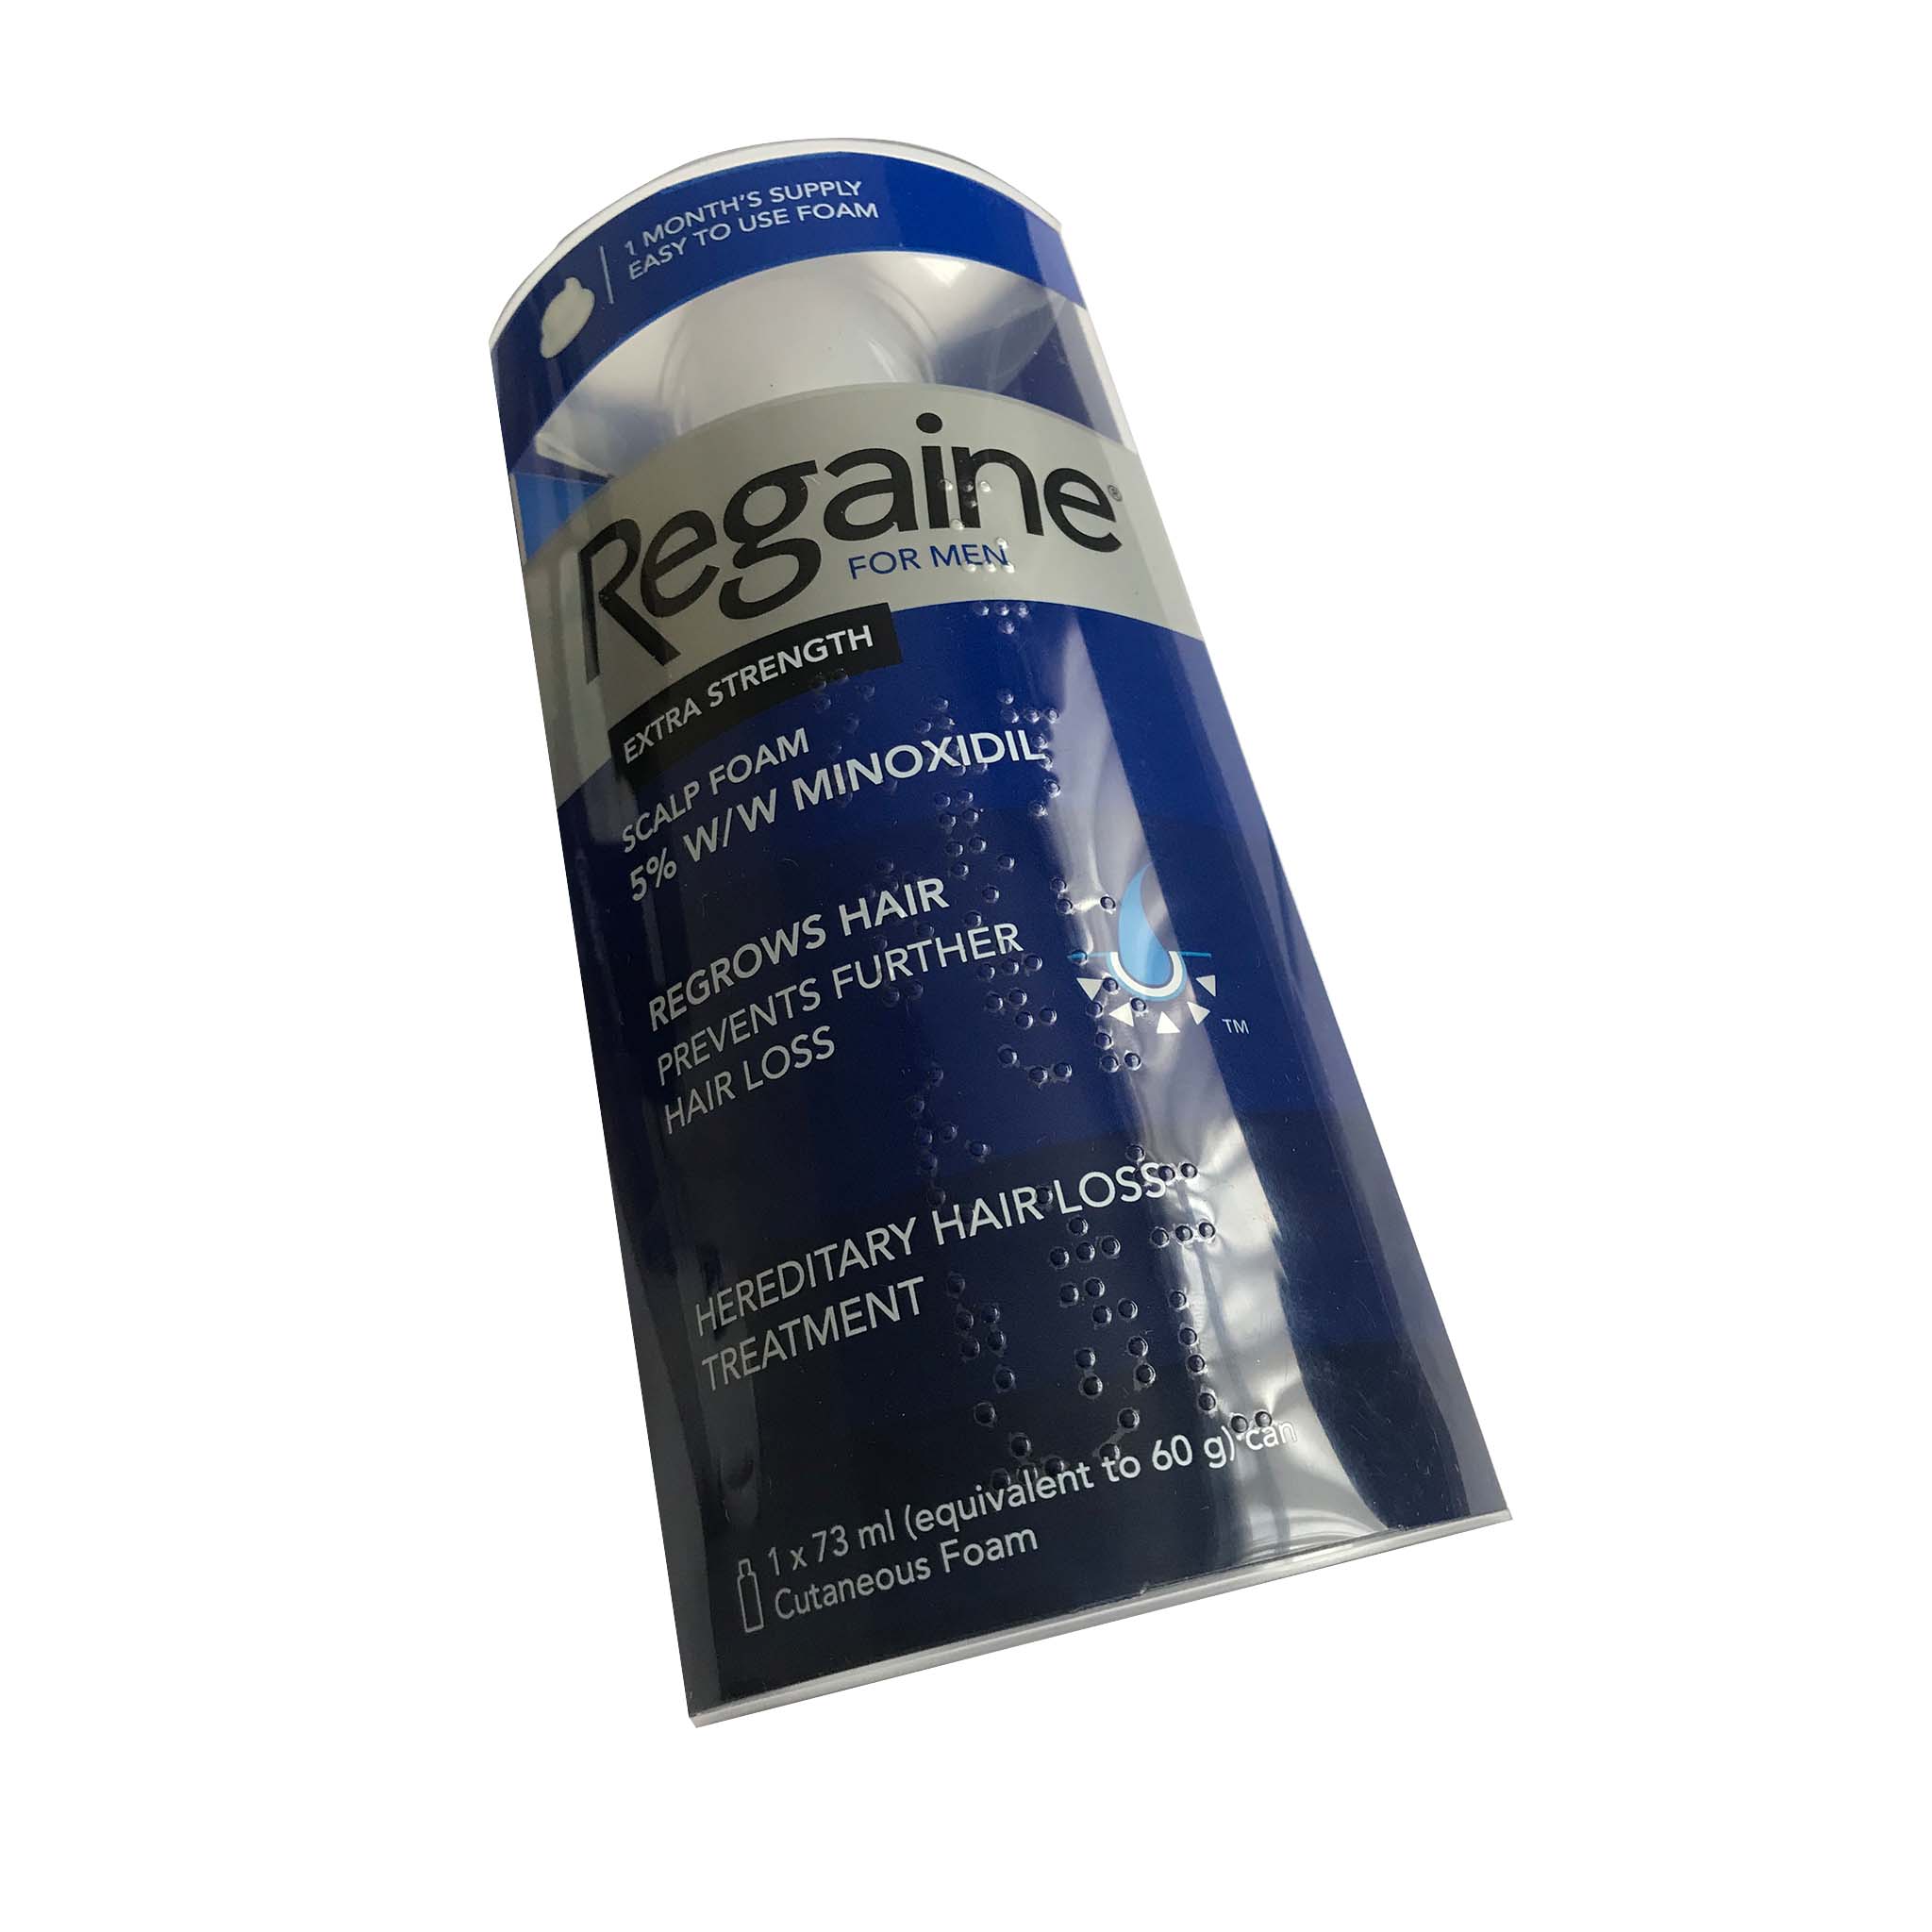 Regaine For Men Extra Strength | Regaine Minoxidil | Regaine Foam